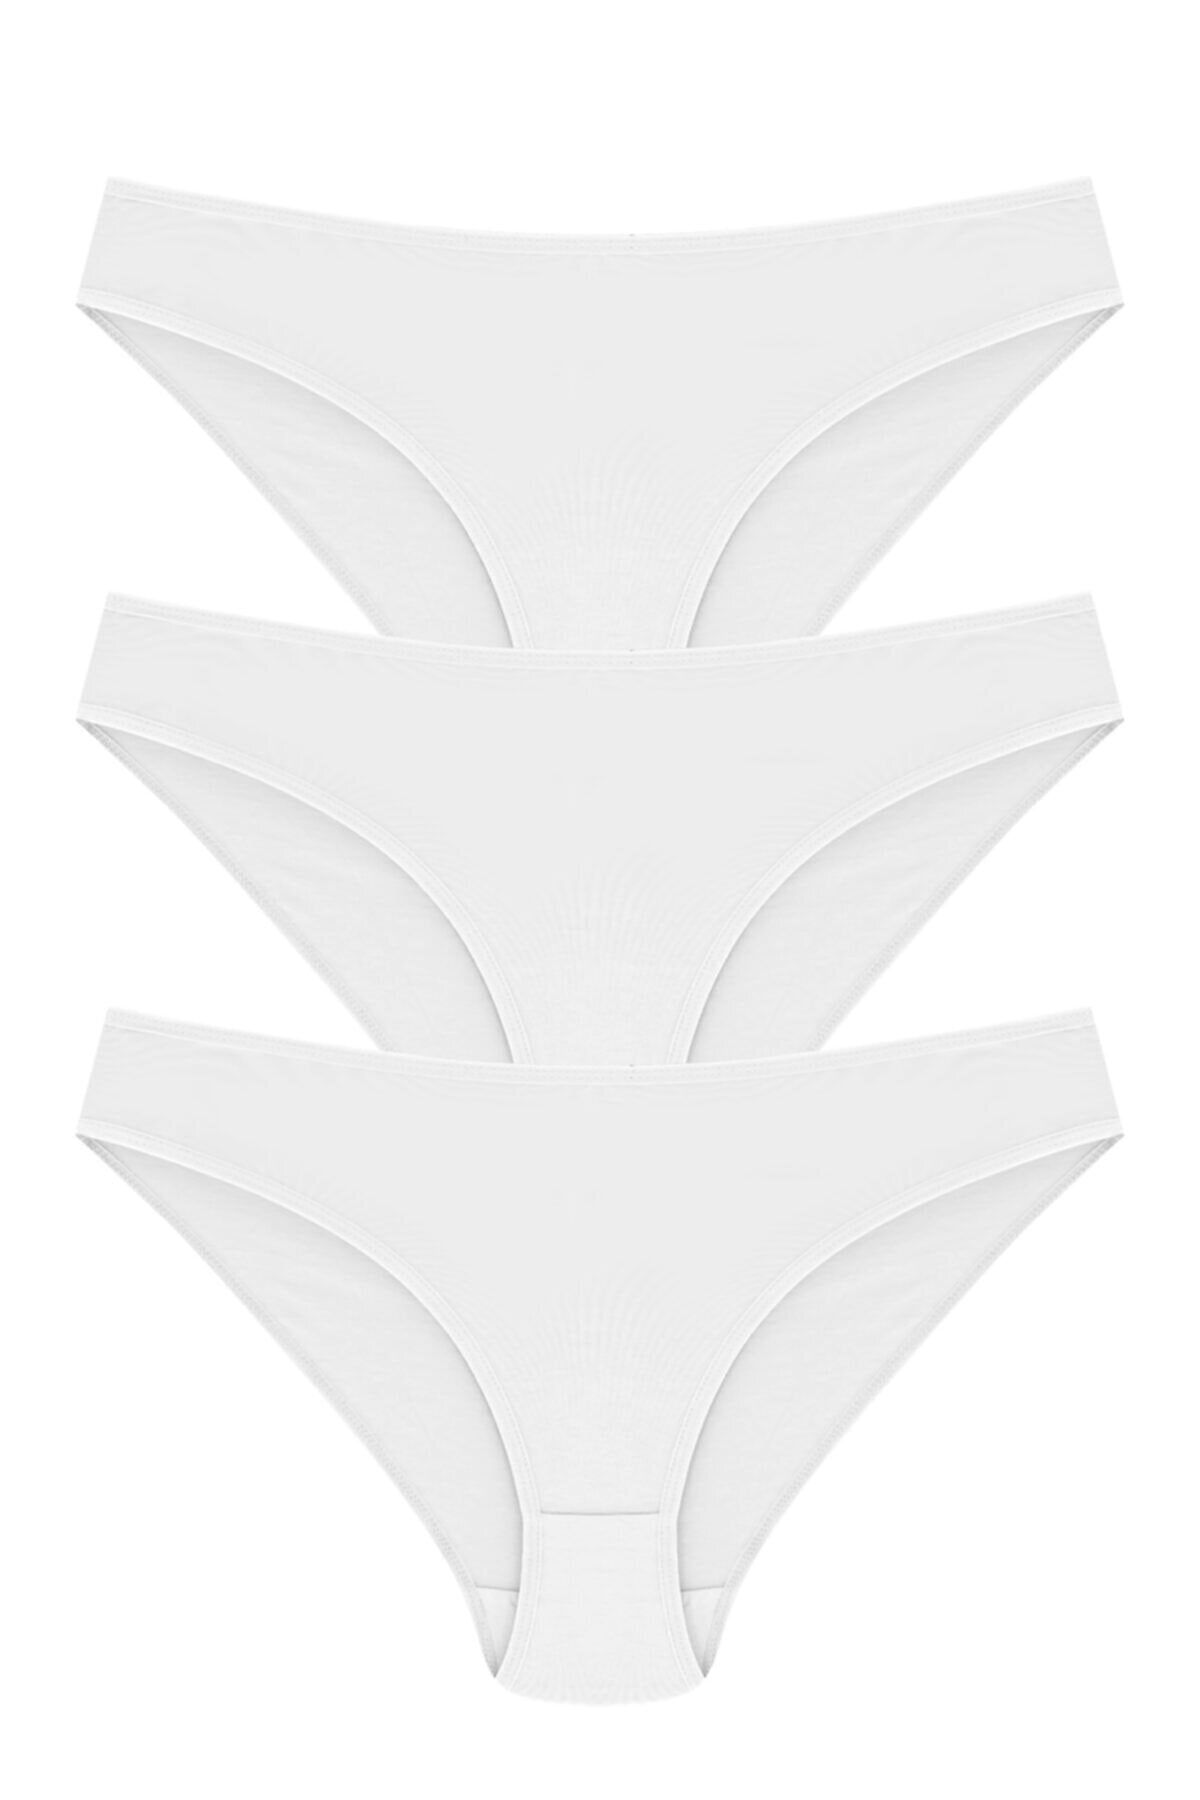 Papatya Kadın Beyaz Pamuk Bikini Model Külot 3'lü